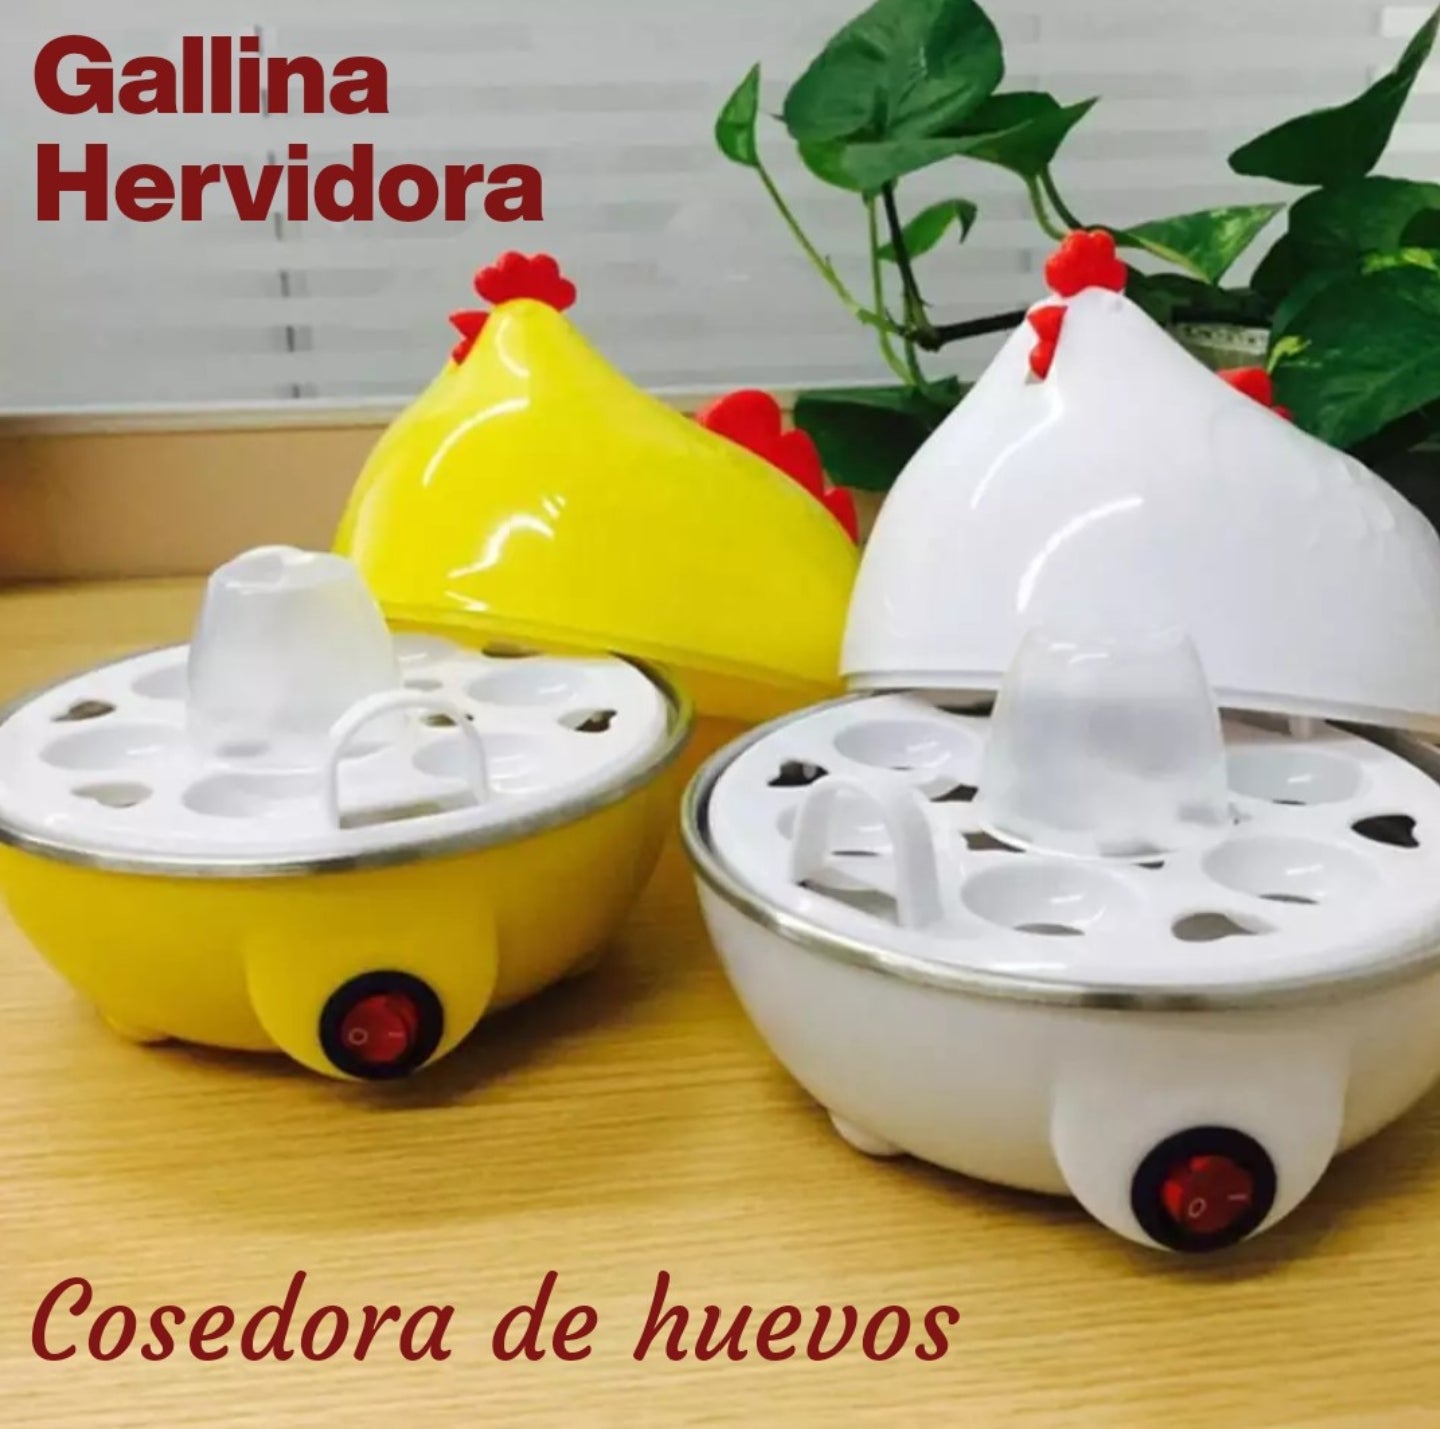 Gallina Hervidora